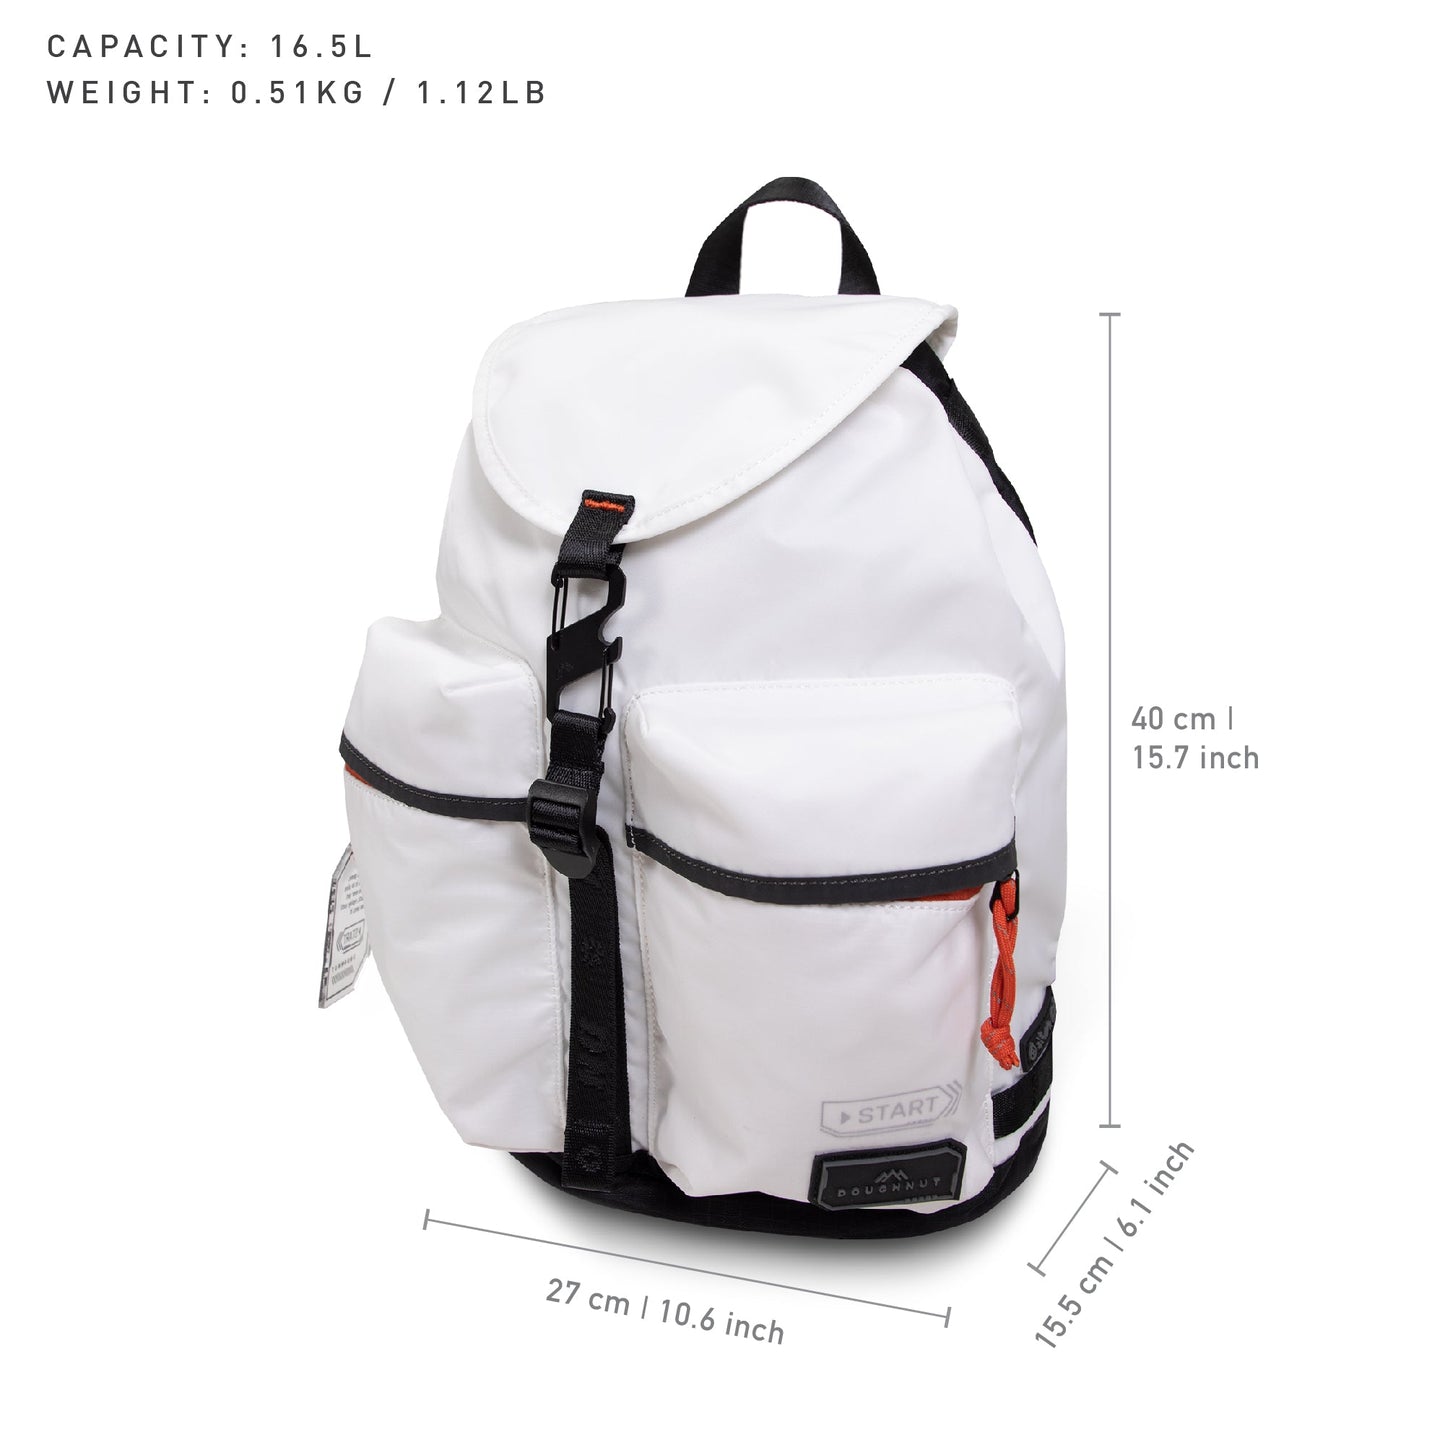 Valor Backpack